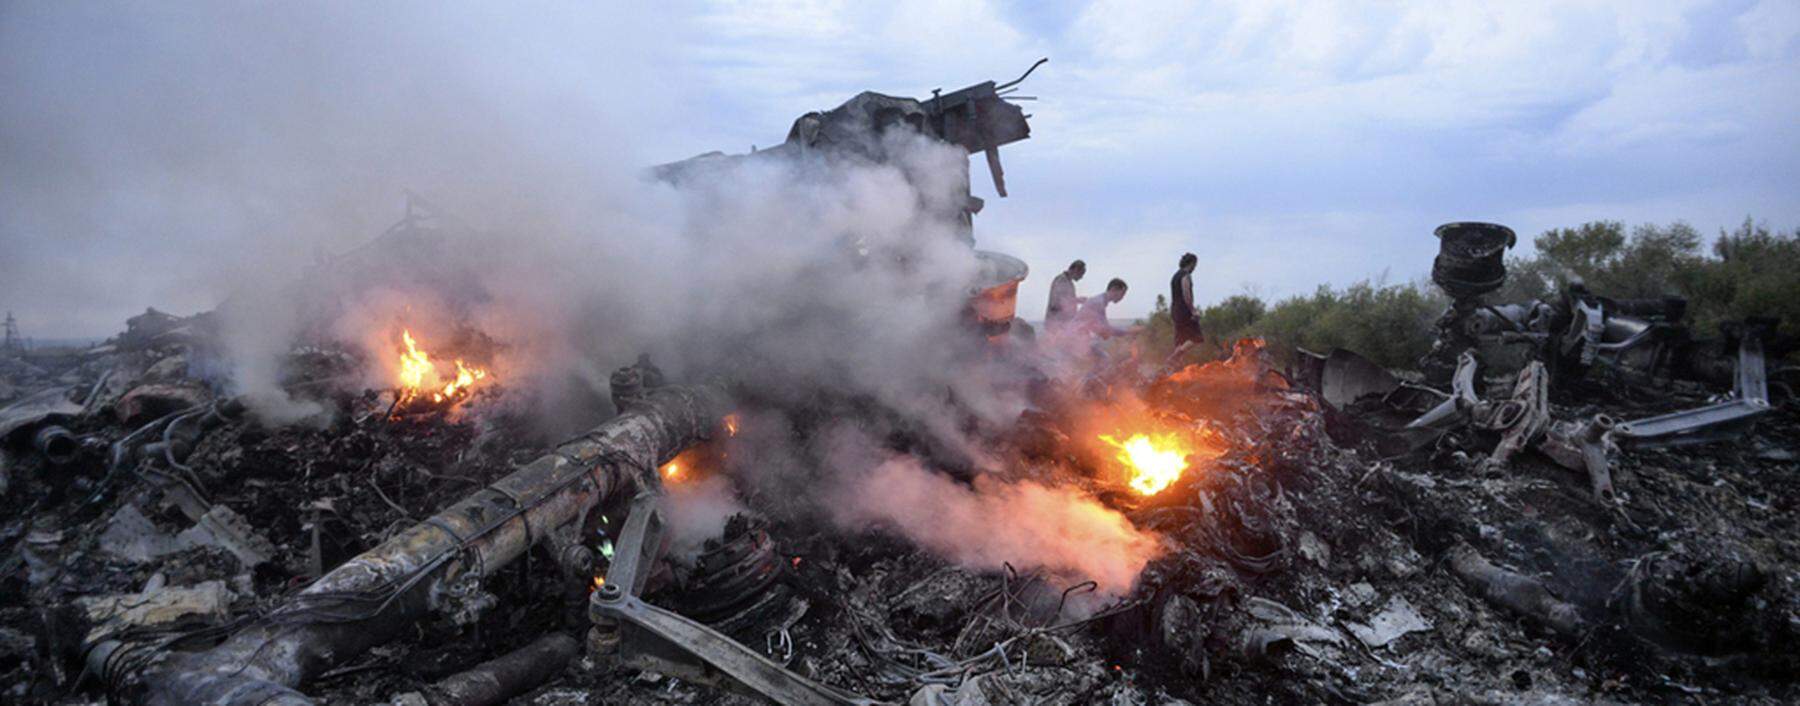 epaselect UKRAINE MALAYSIA AIRLINES PLANE CRASH